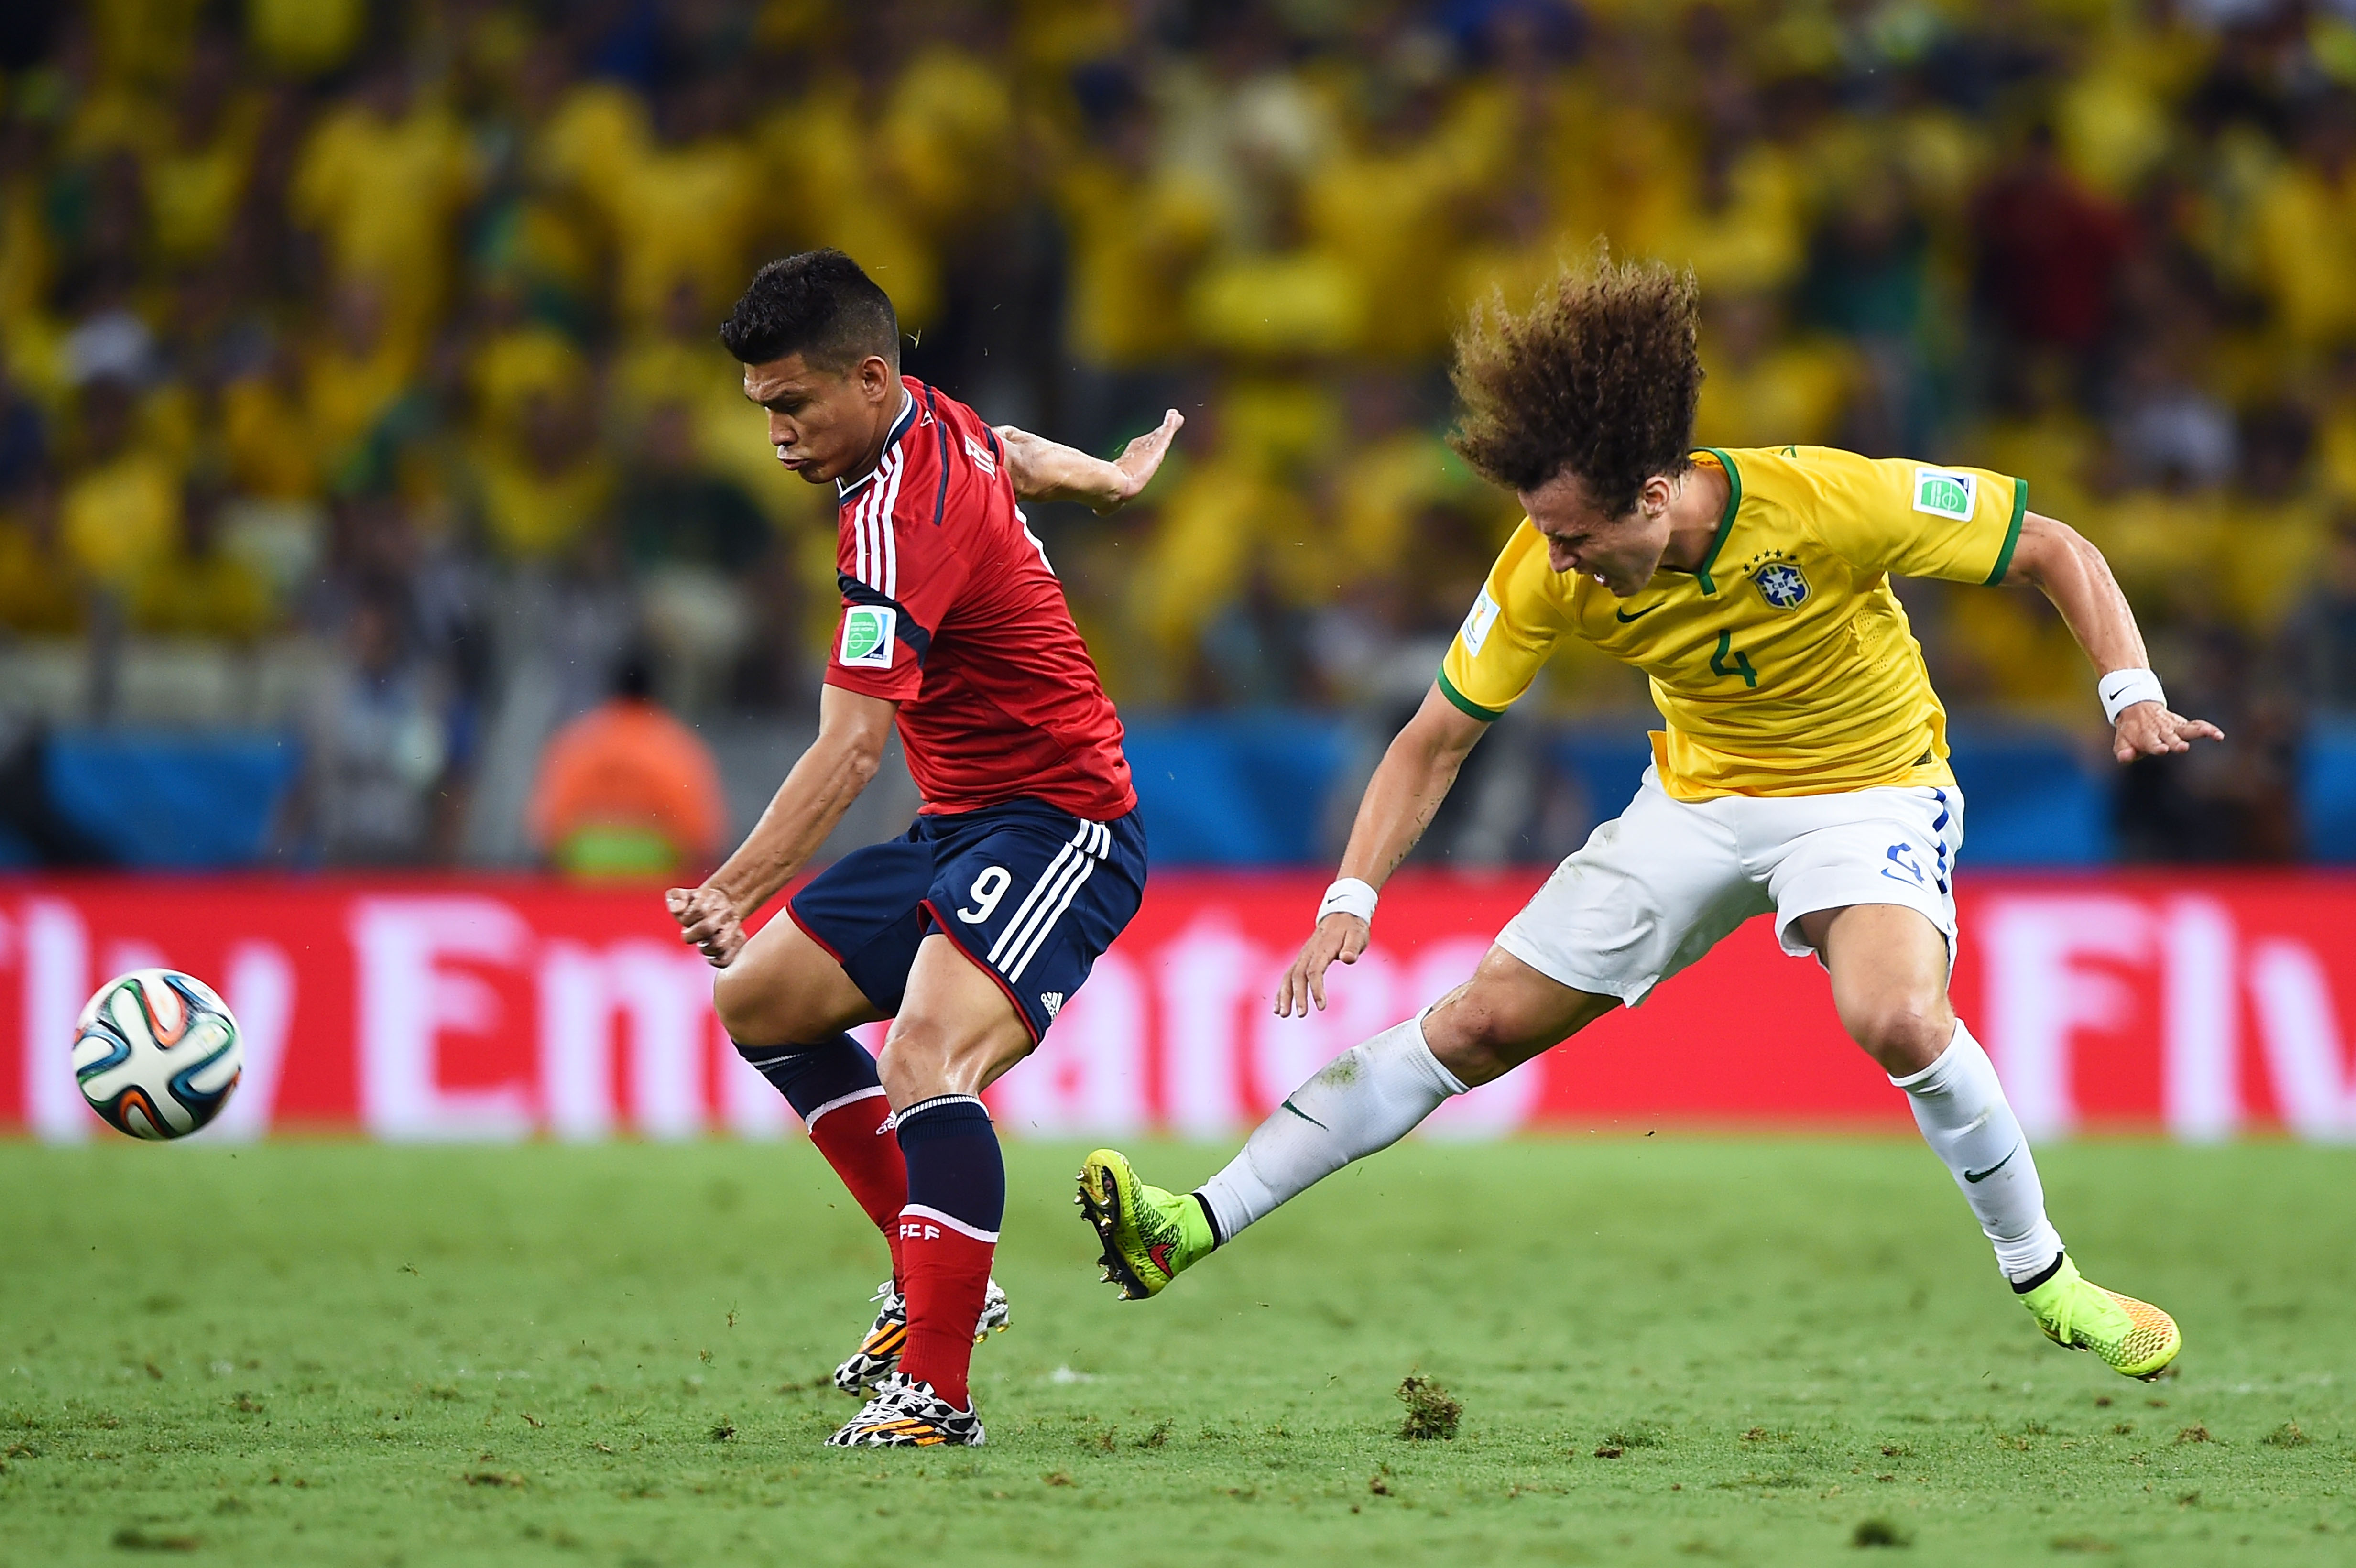 Brasilien gegen Kolumbien: zweites Tor für Brasilien durch David Luiz (Video)